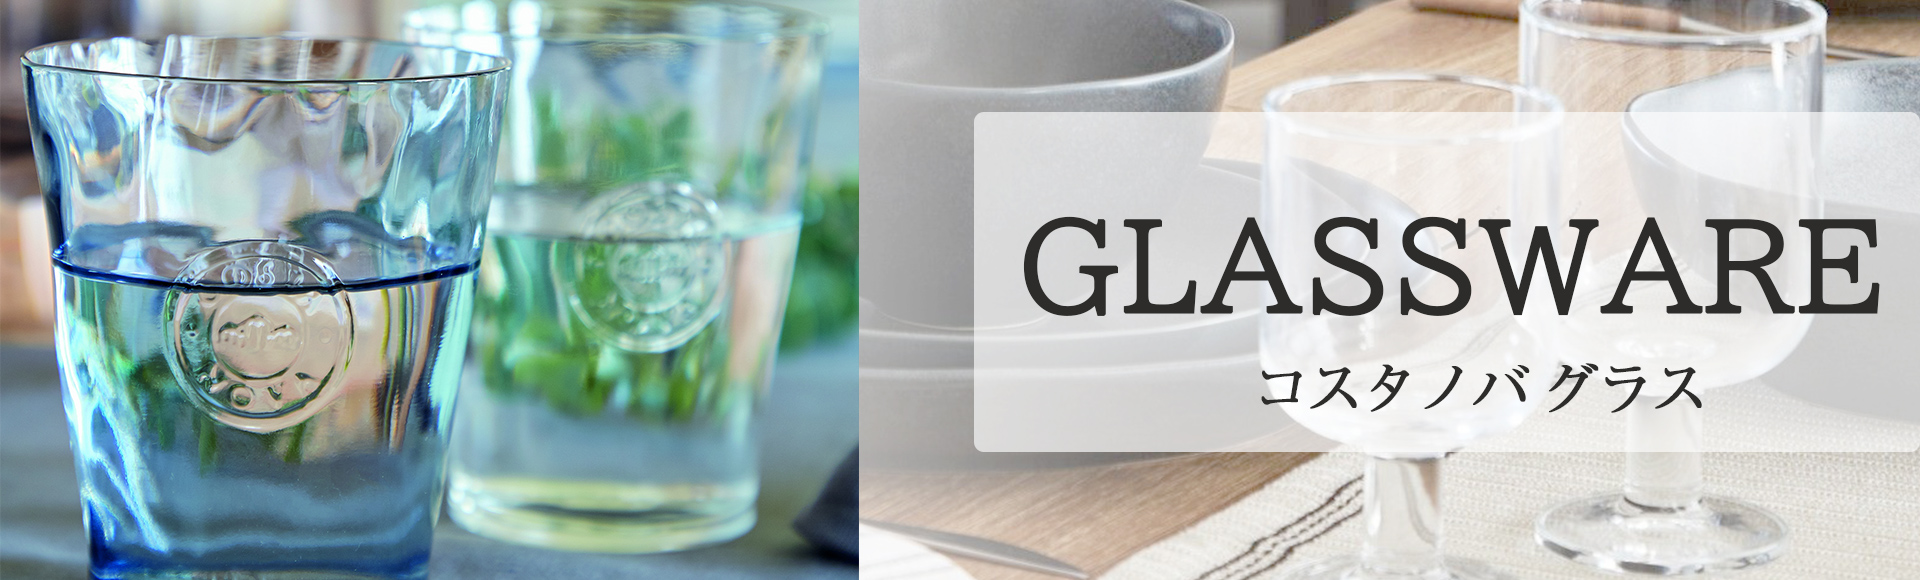 コスタノバのグラスウェアは、さりげないデザインでどんな食器にも合わせやすい使いやすさが魅力。厚めのグラスは、人の手で作られたような温かみのある、優しい風合いです。